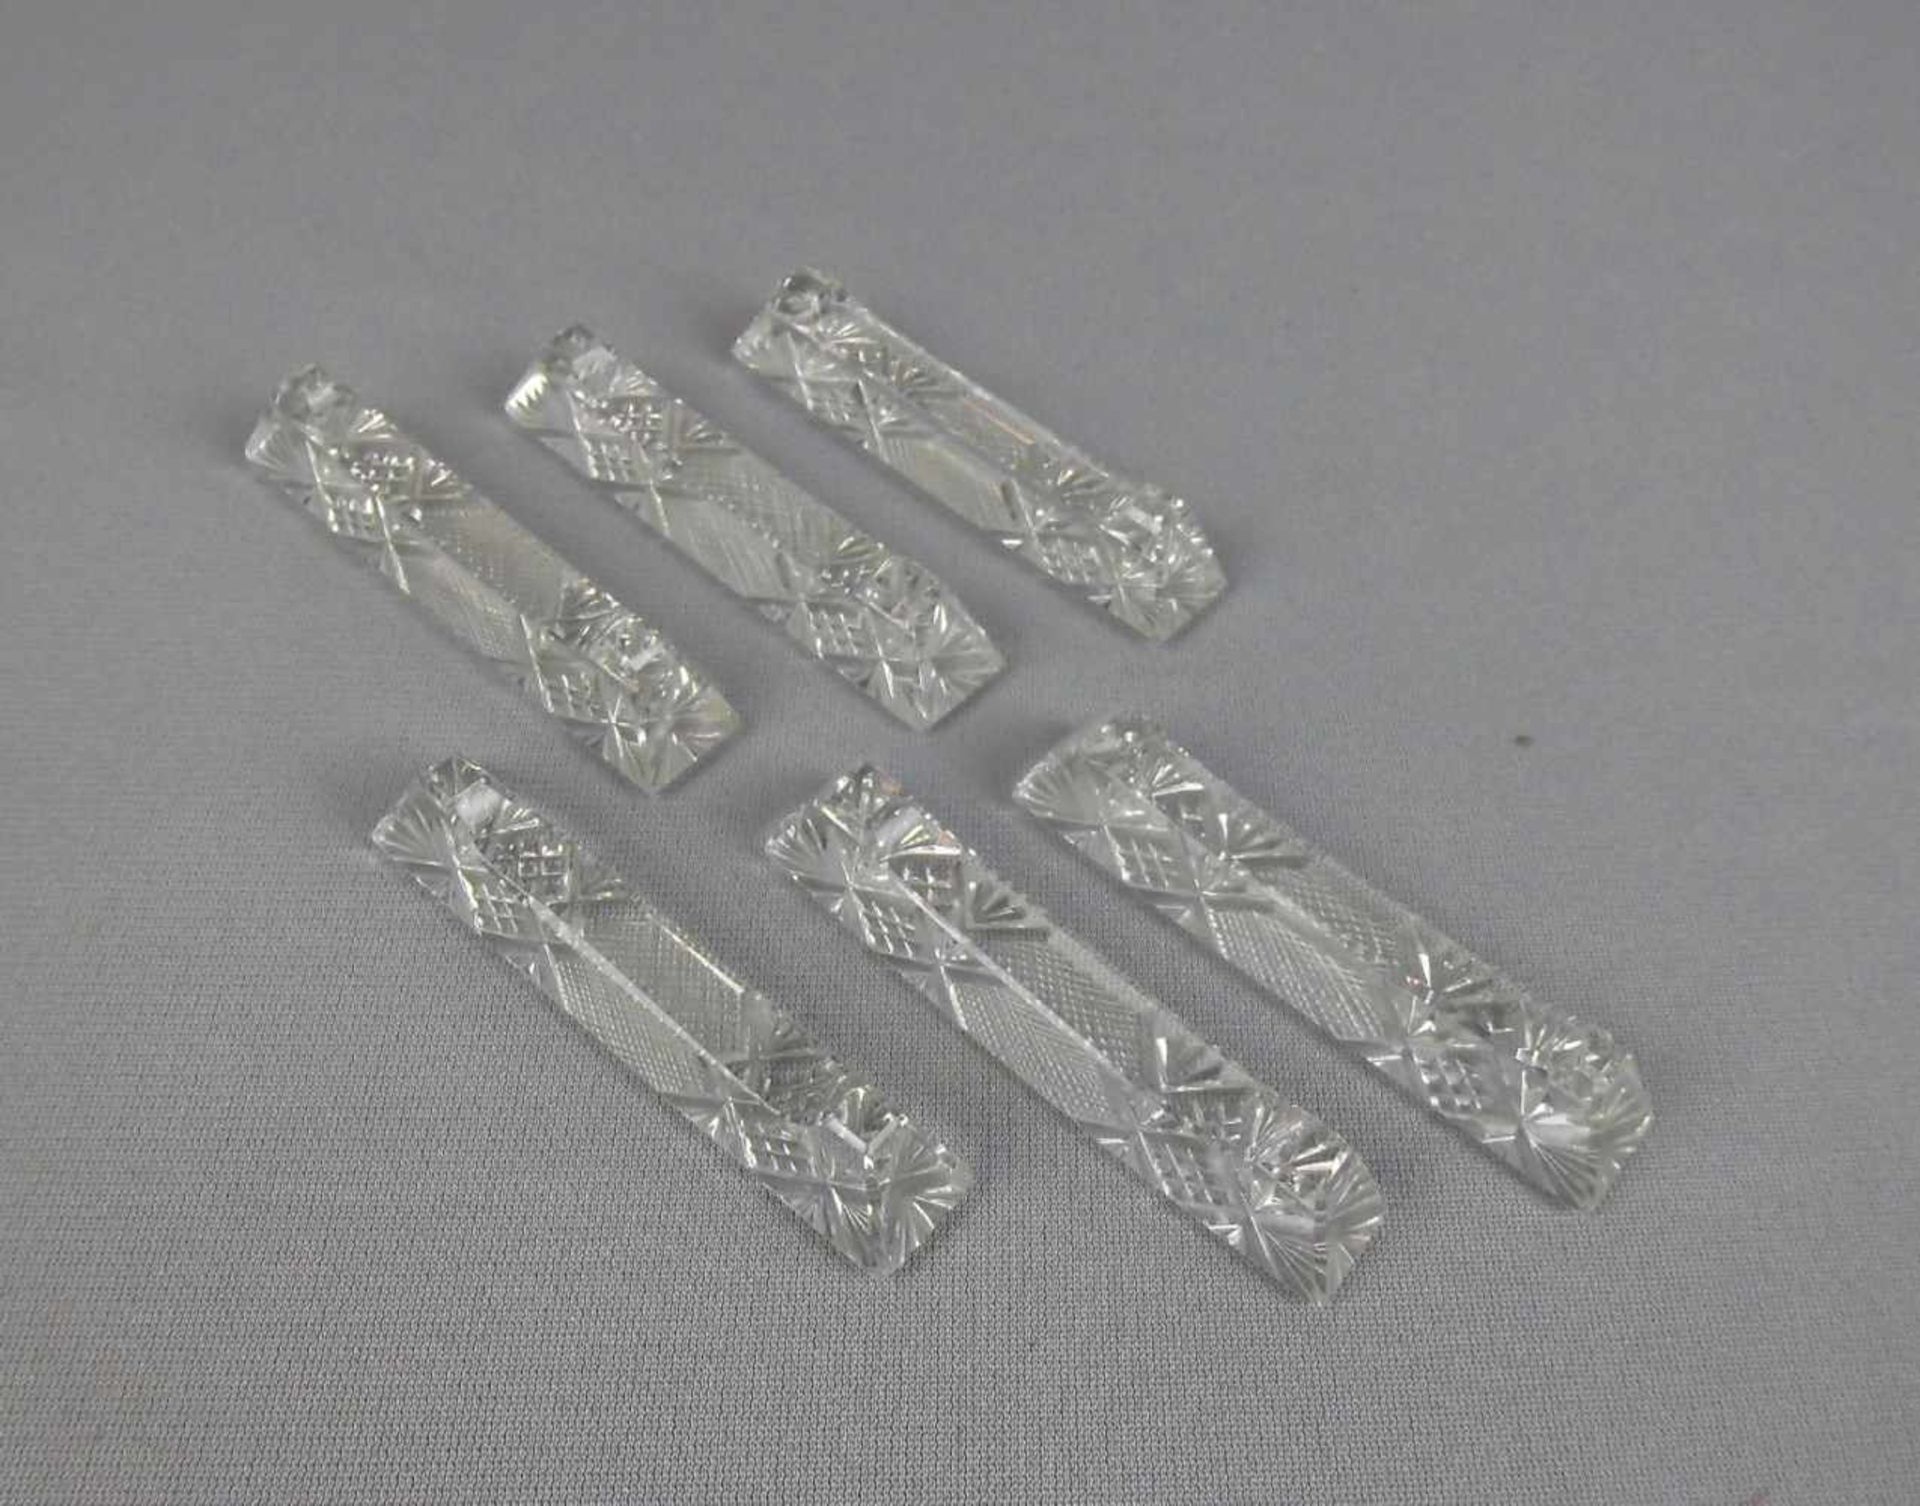 6 ART DÉCO - MESSERBÄNKCHEN / knife rests, Kristallglas mit Schliffdekor, um 1920. Trapezförmiger